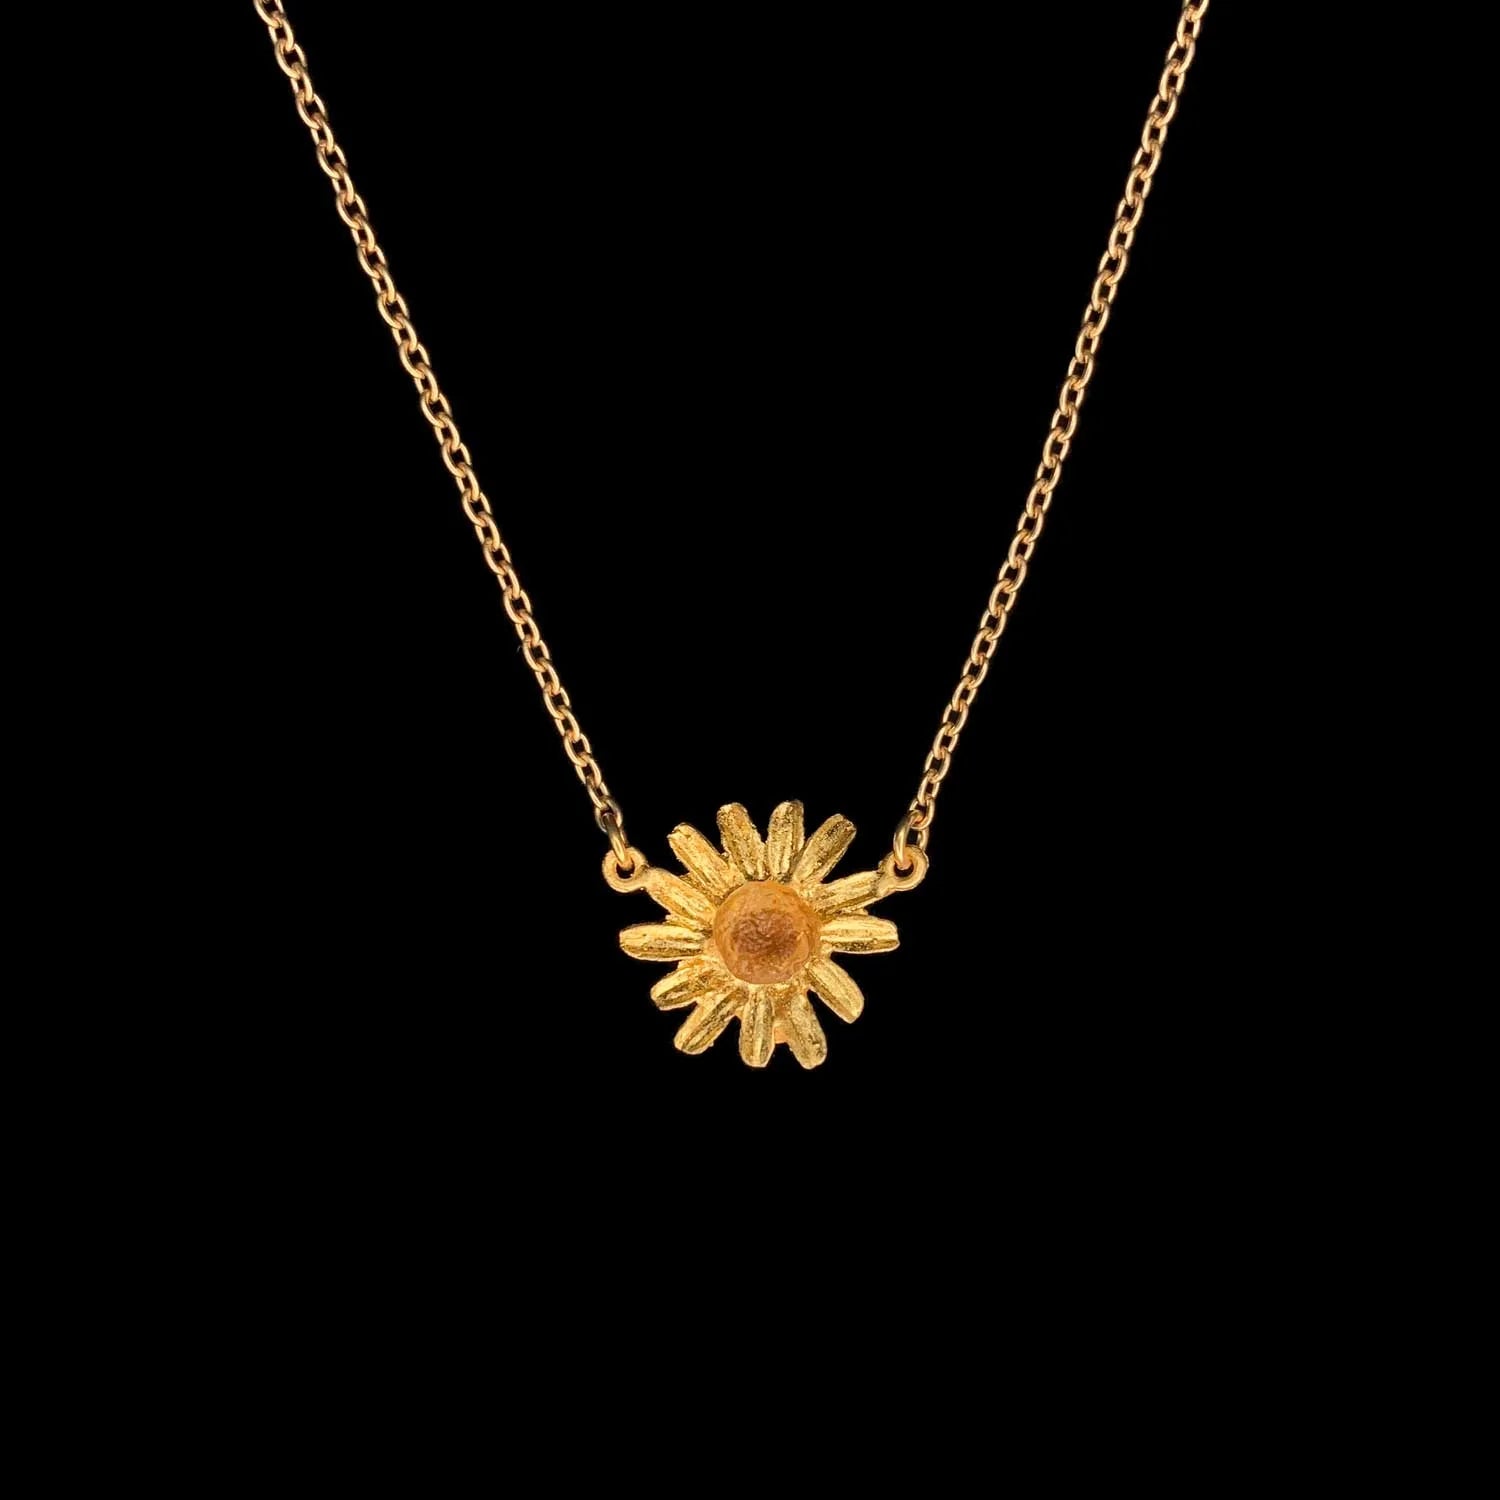 ゴールデンデイジー シングルフラワーペンダント / Golden Daisy Single Flower Pendant